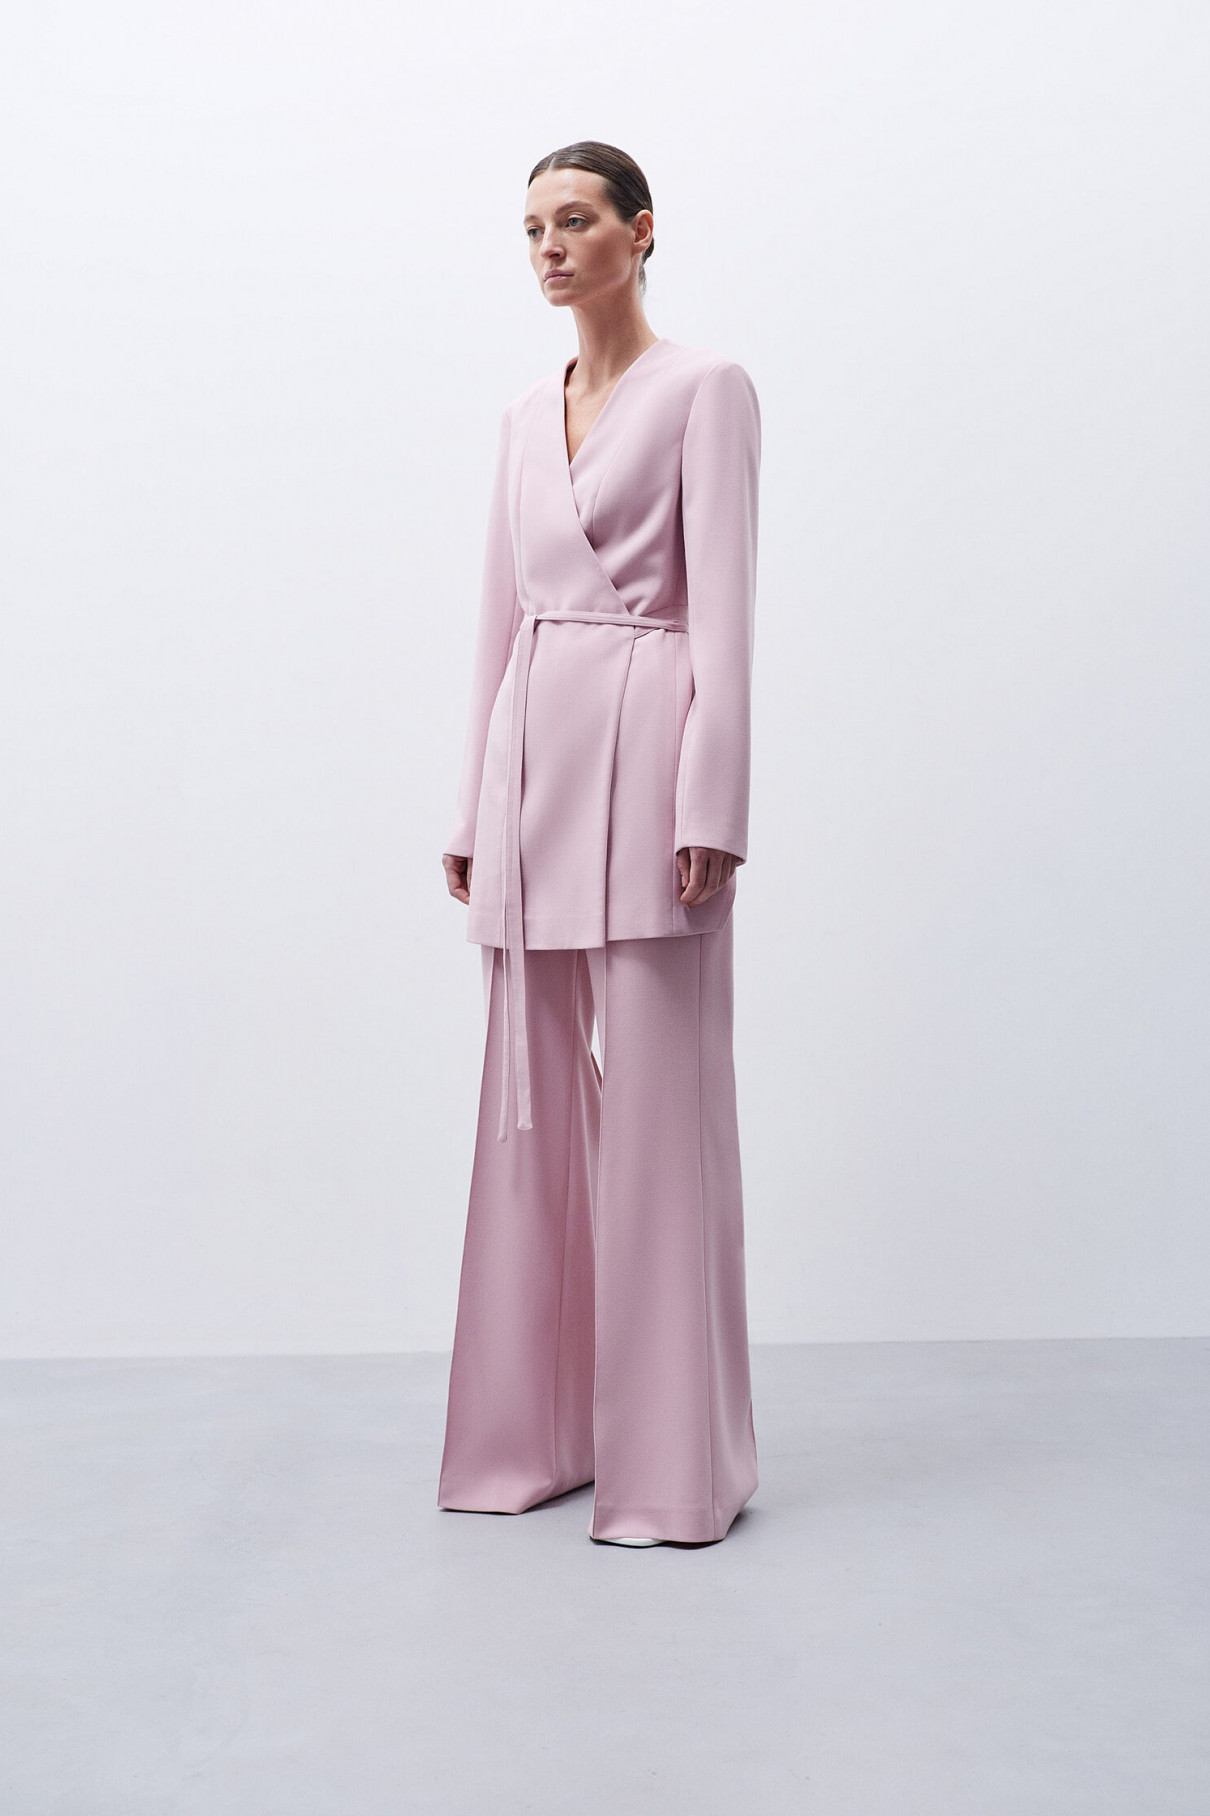 Жакет-кимоно розовый , арт. FR21-РП-2-рз-2 купить в интернет-магазине